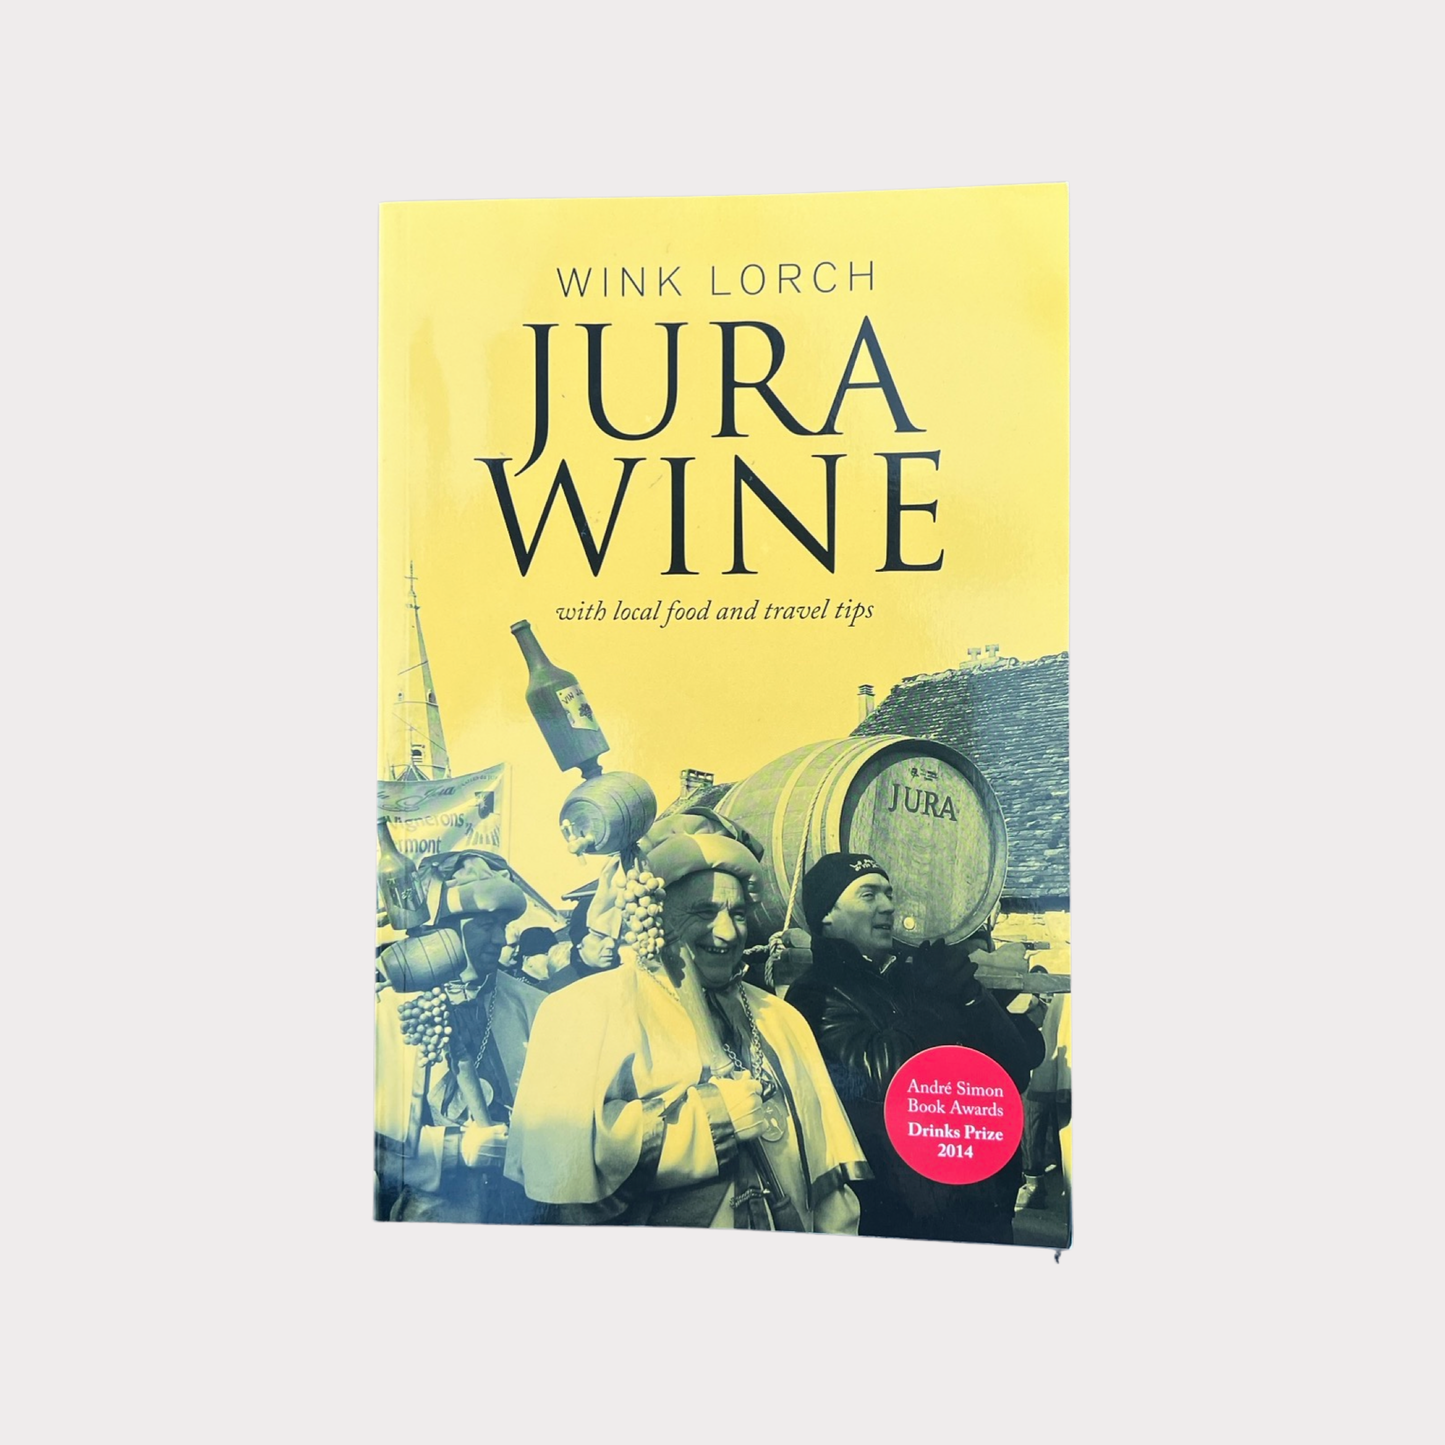 Jura Wine by Wink Lorch